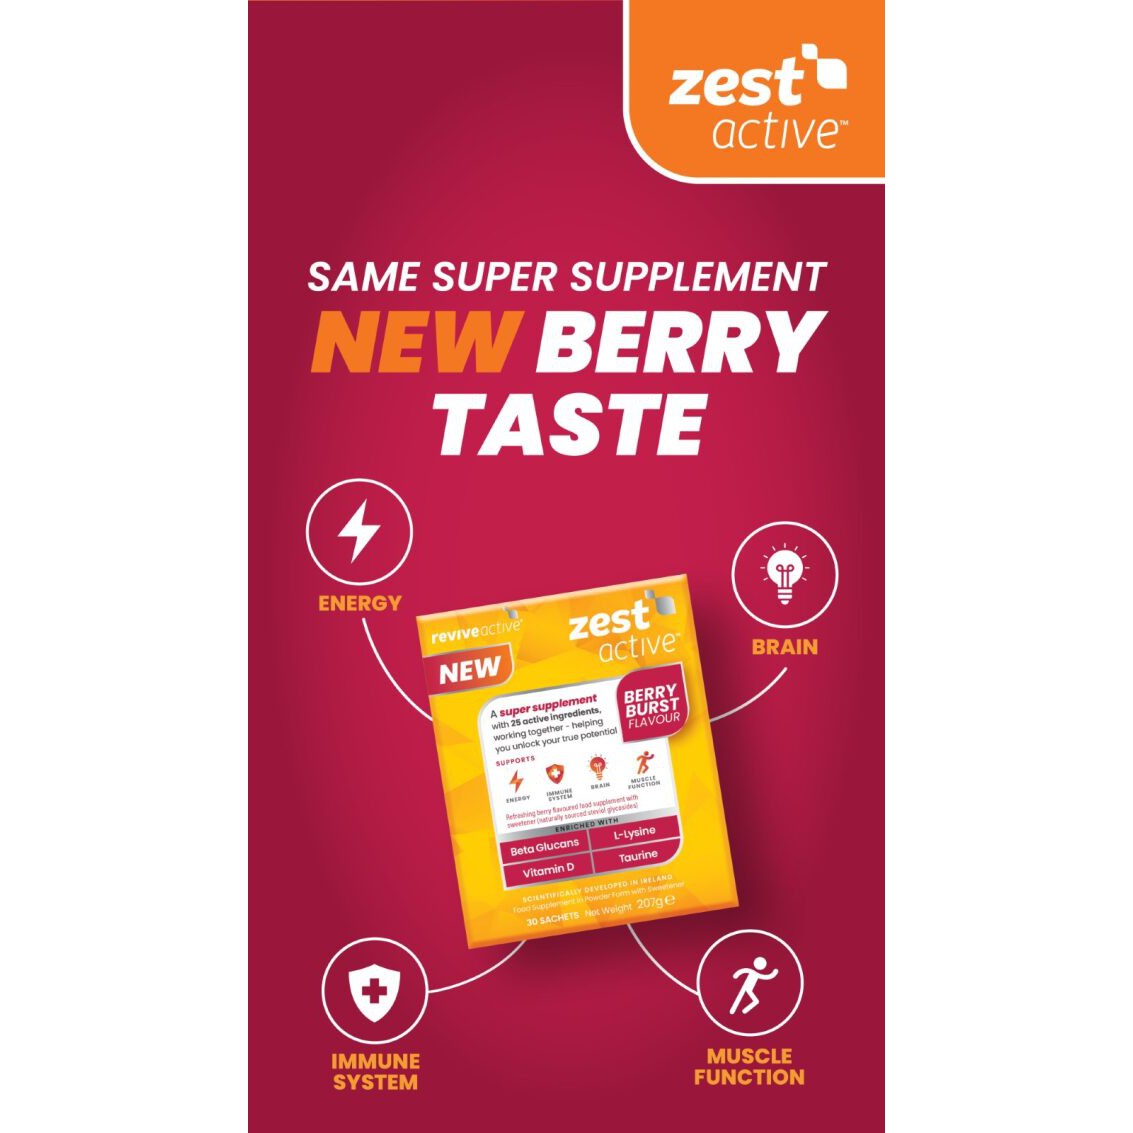 Revive Active Super Supplement Zest Active Berry Burst  Flavour 7 day pack